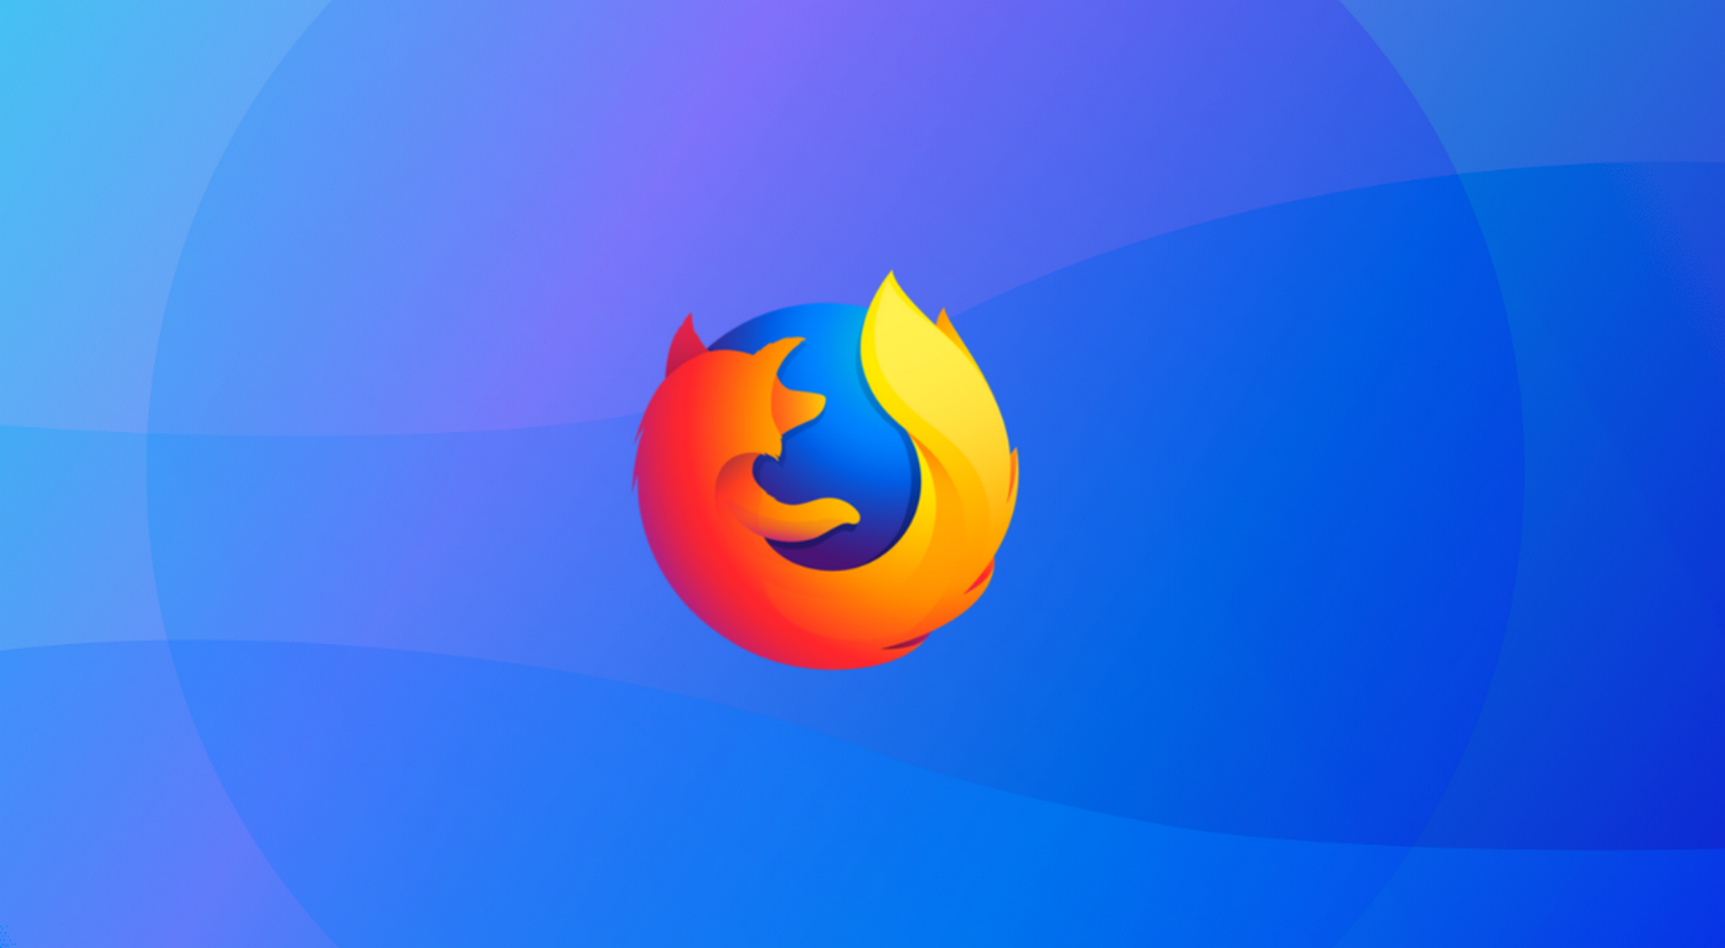 Pour monétiser son navigateur, Mozilla entend lui ajouter des fonctions que l'on ne trouvera pas dans la version gratuite. © Mozilla